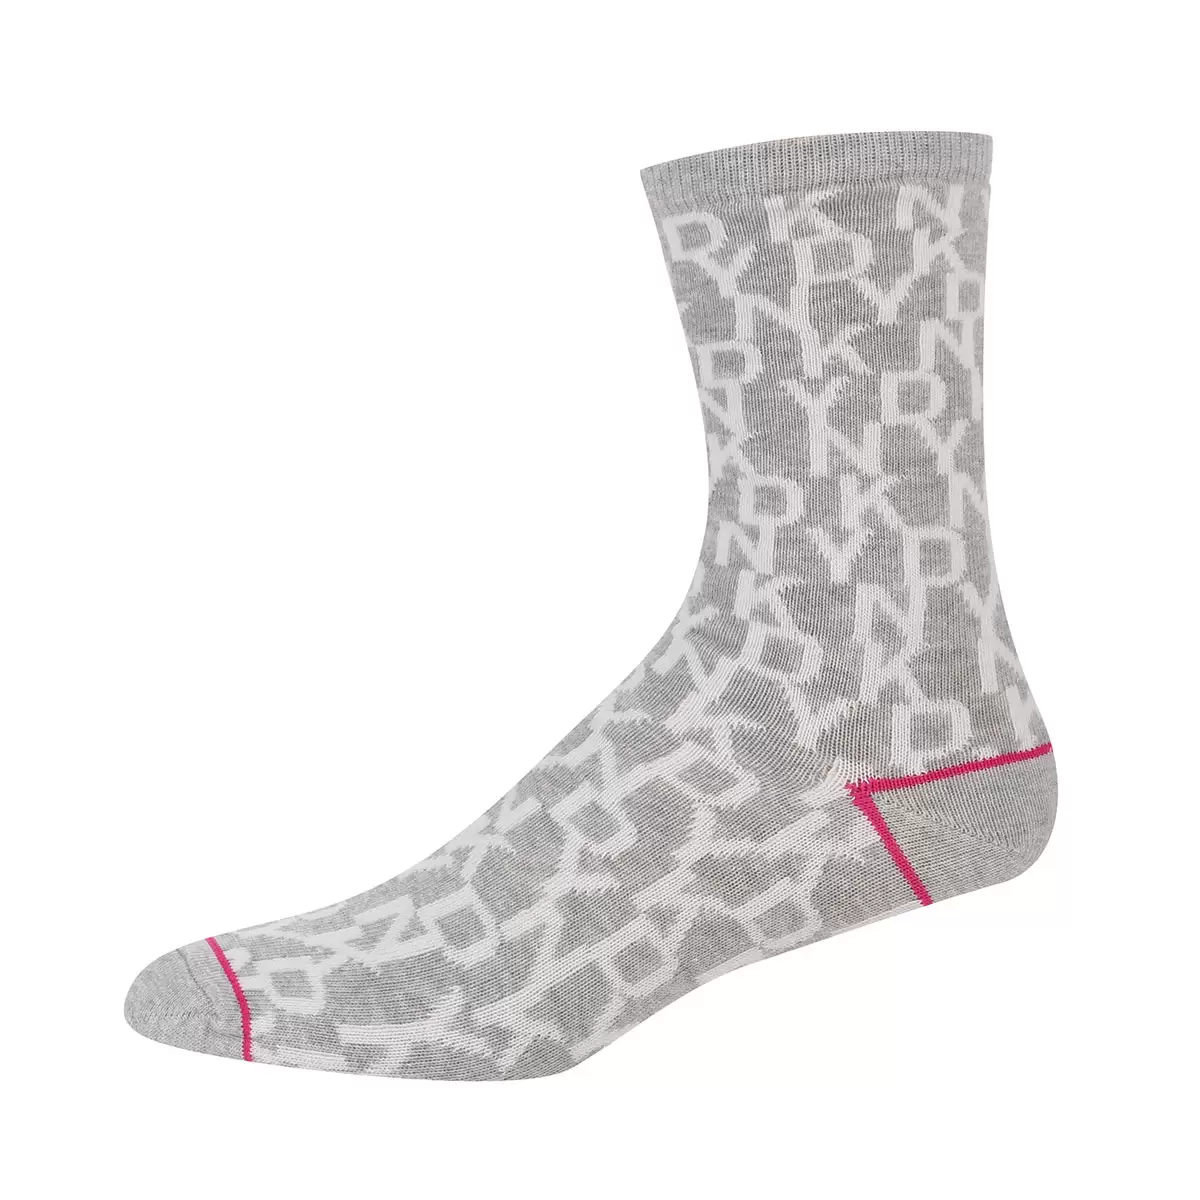 DKNY Women's Patterned Socks, 6 Pack in Pink